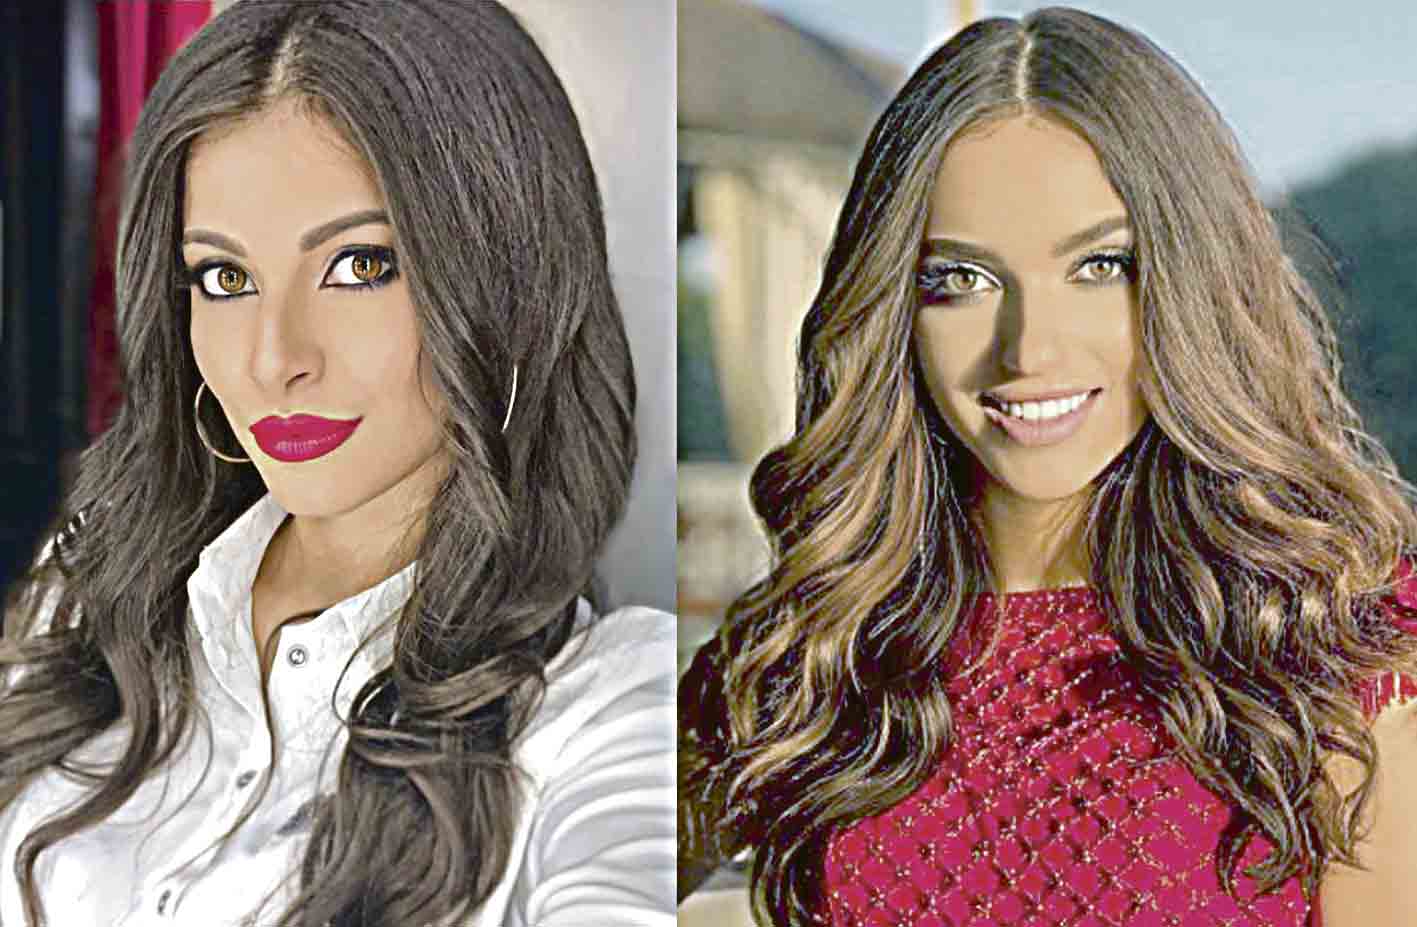 Дві вінницькі красуні змагаються за корону «Міс Україна-Всесвіт-2020». Хто вони?